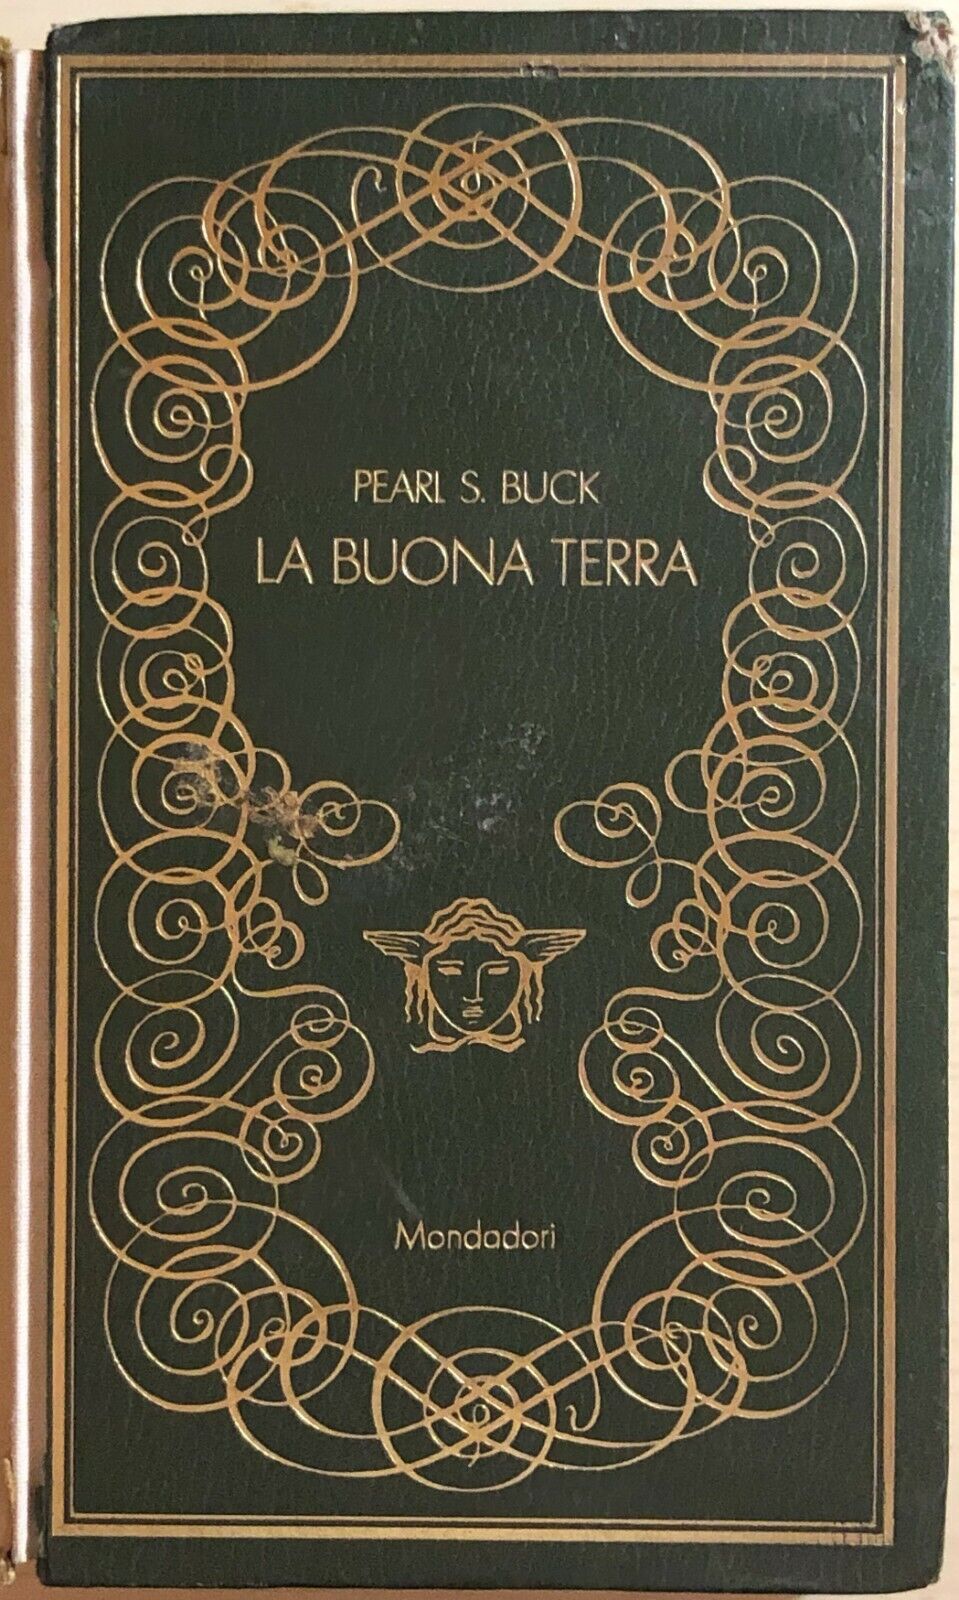 La buona terra di Pearl S. Buck, 1970, Mondadori